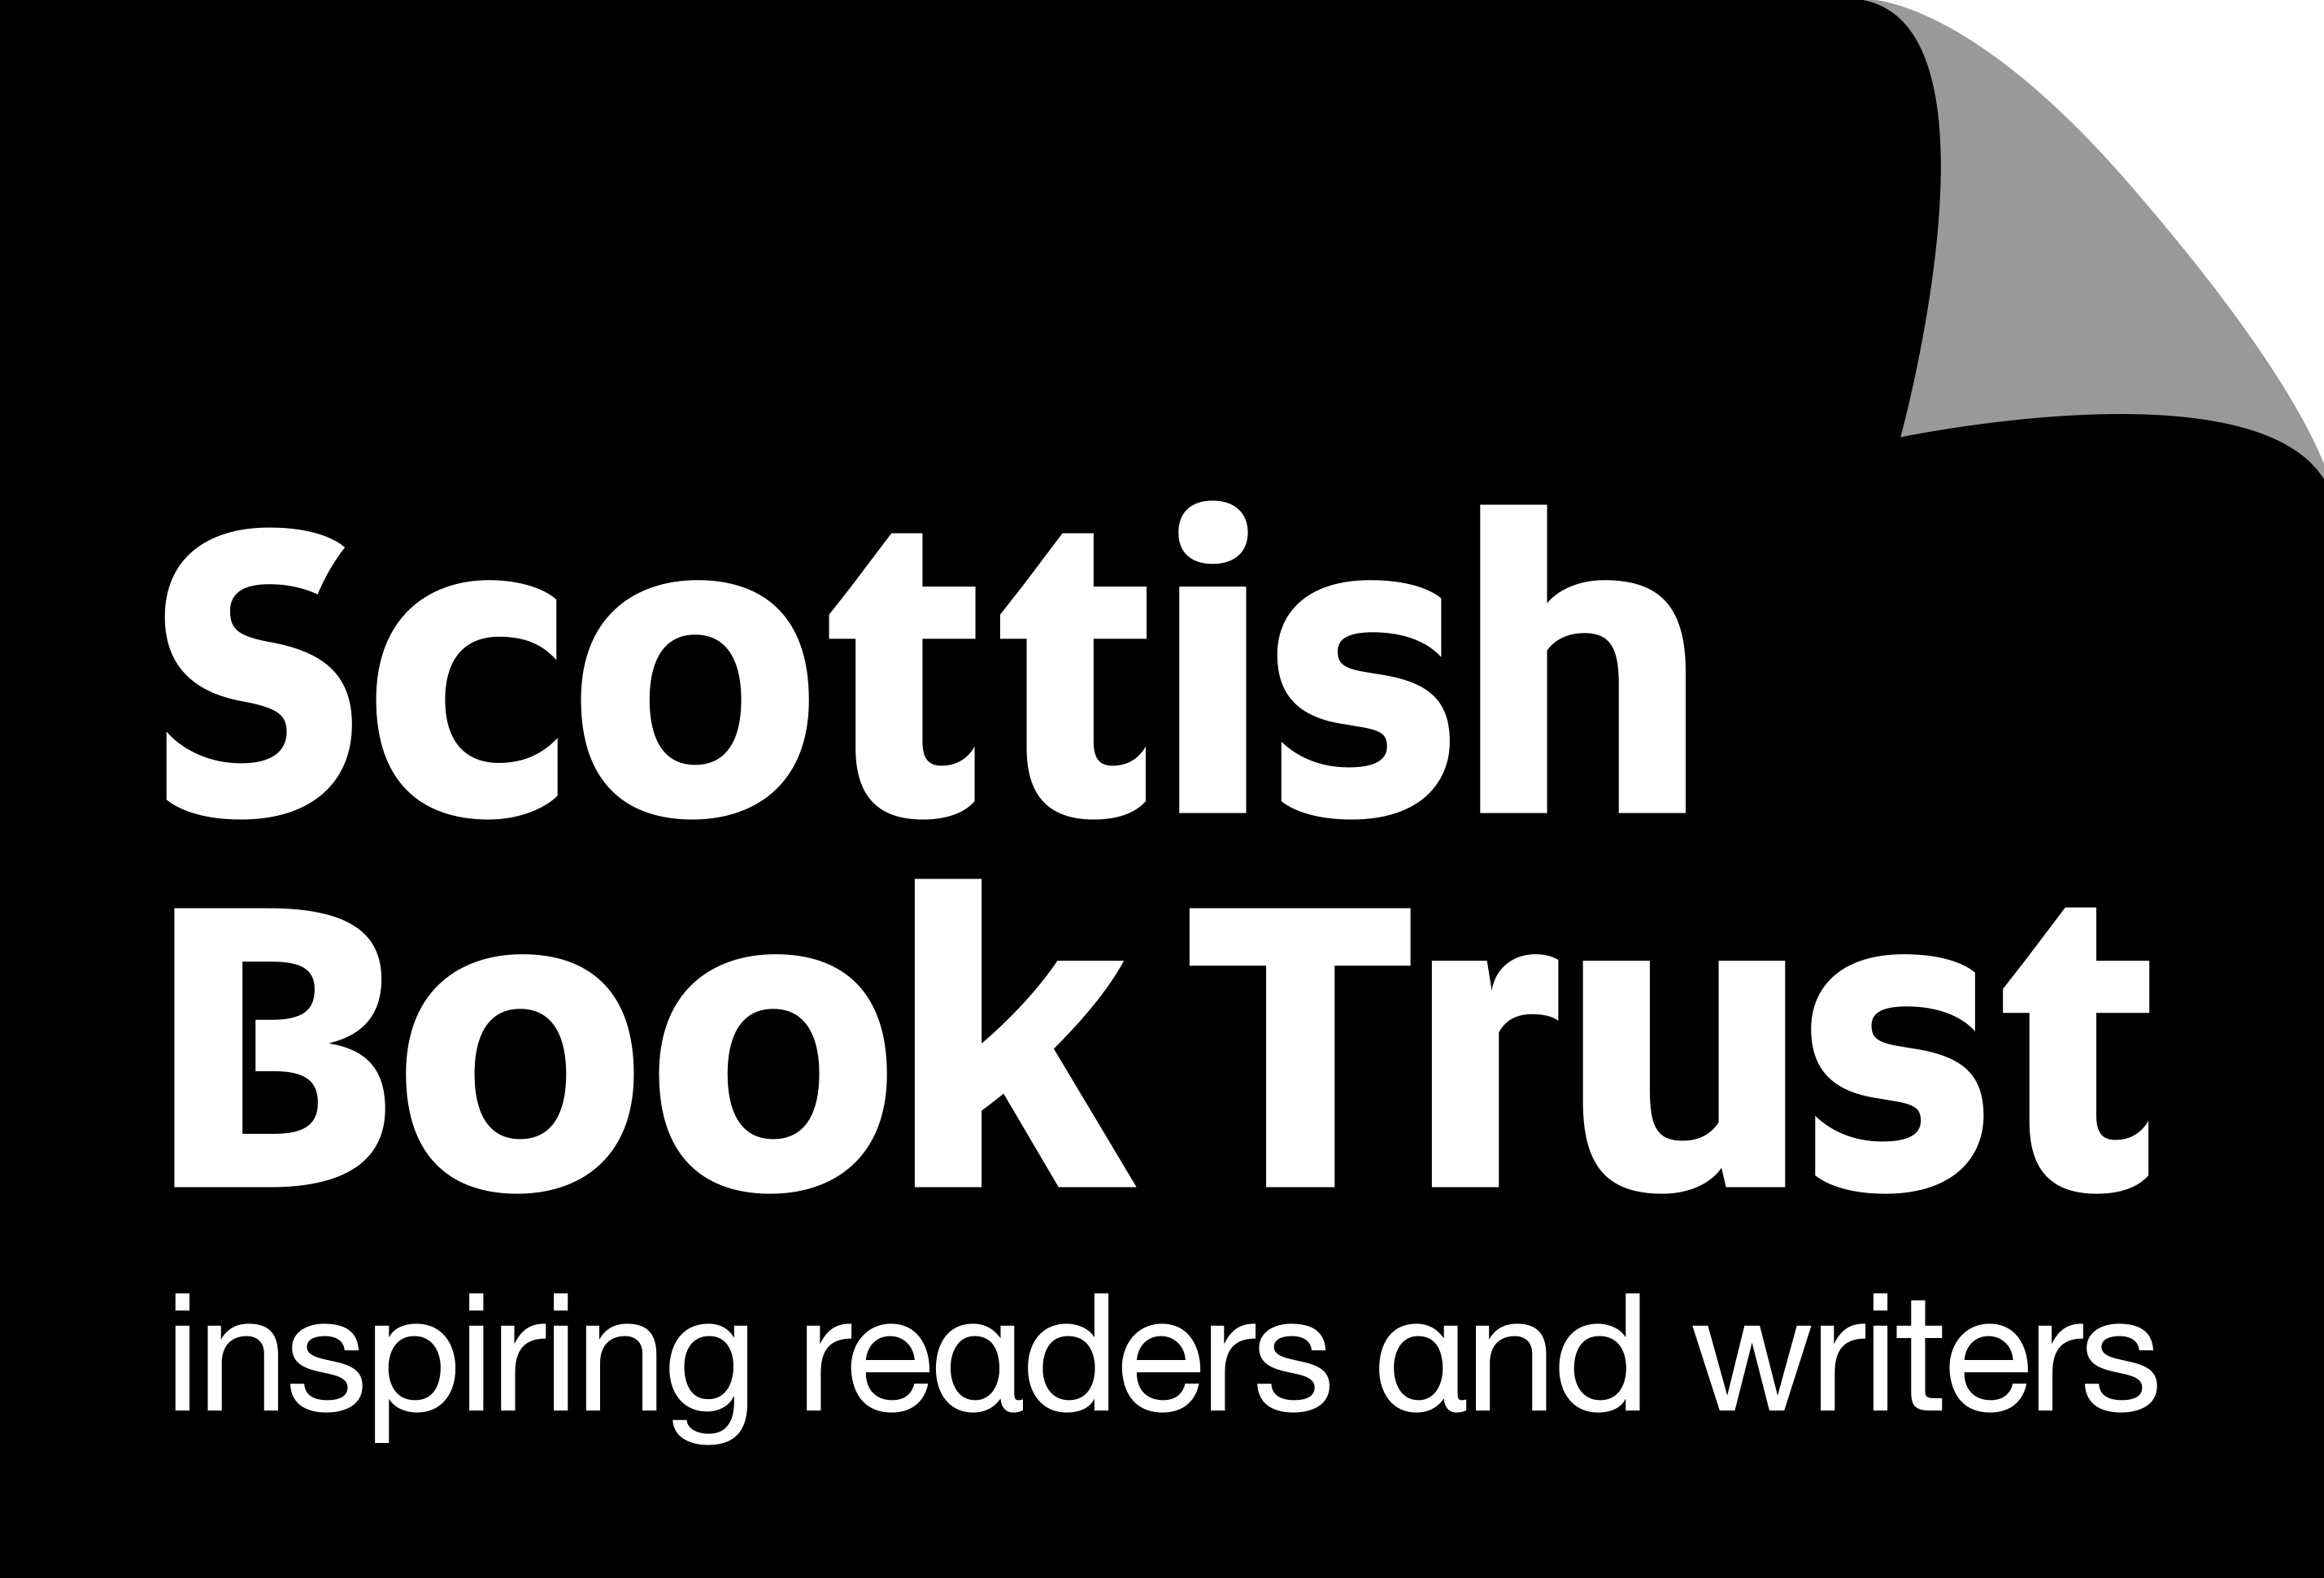 Scottish Book Trust Logo